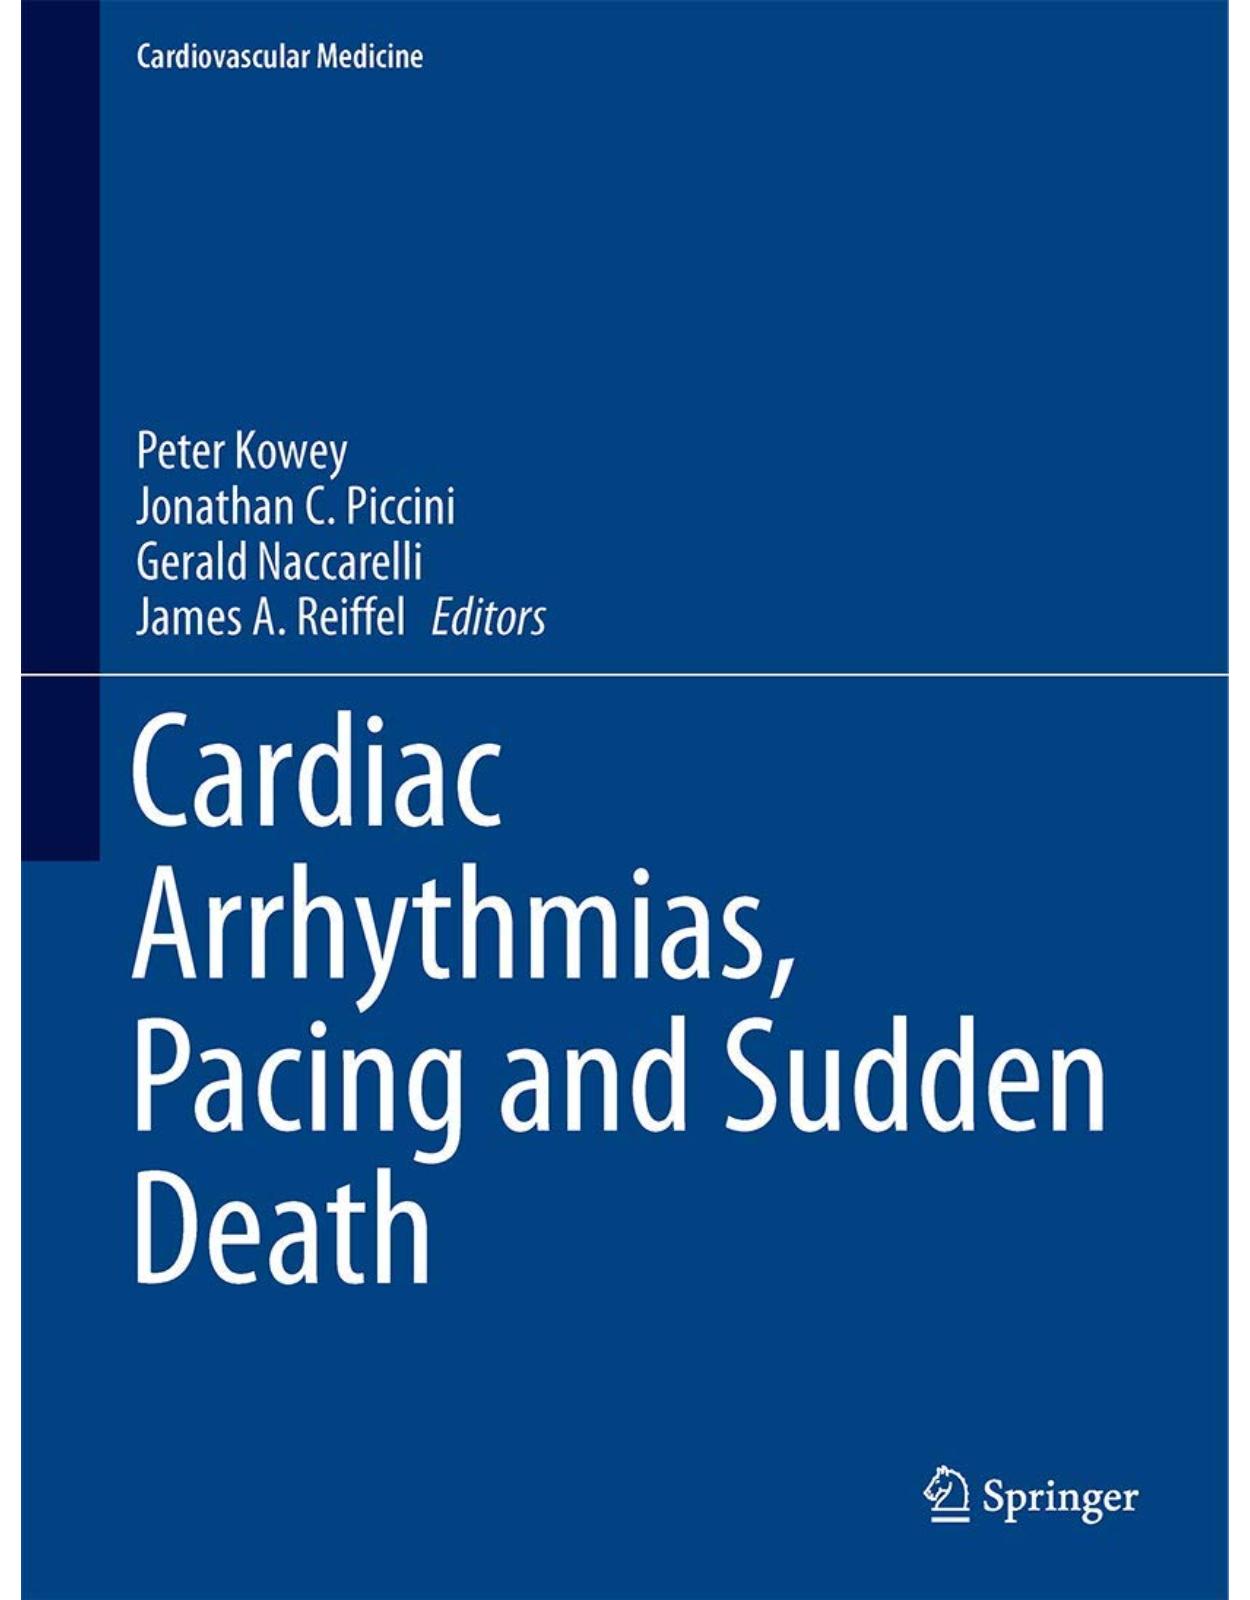 Cardiac Arrhythmias, Pacing and Sudden Death (Cardiovascular Medicine) 